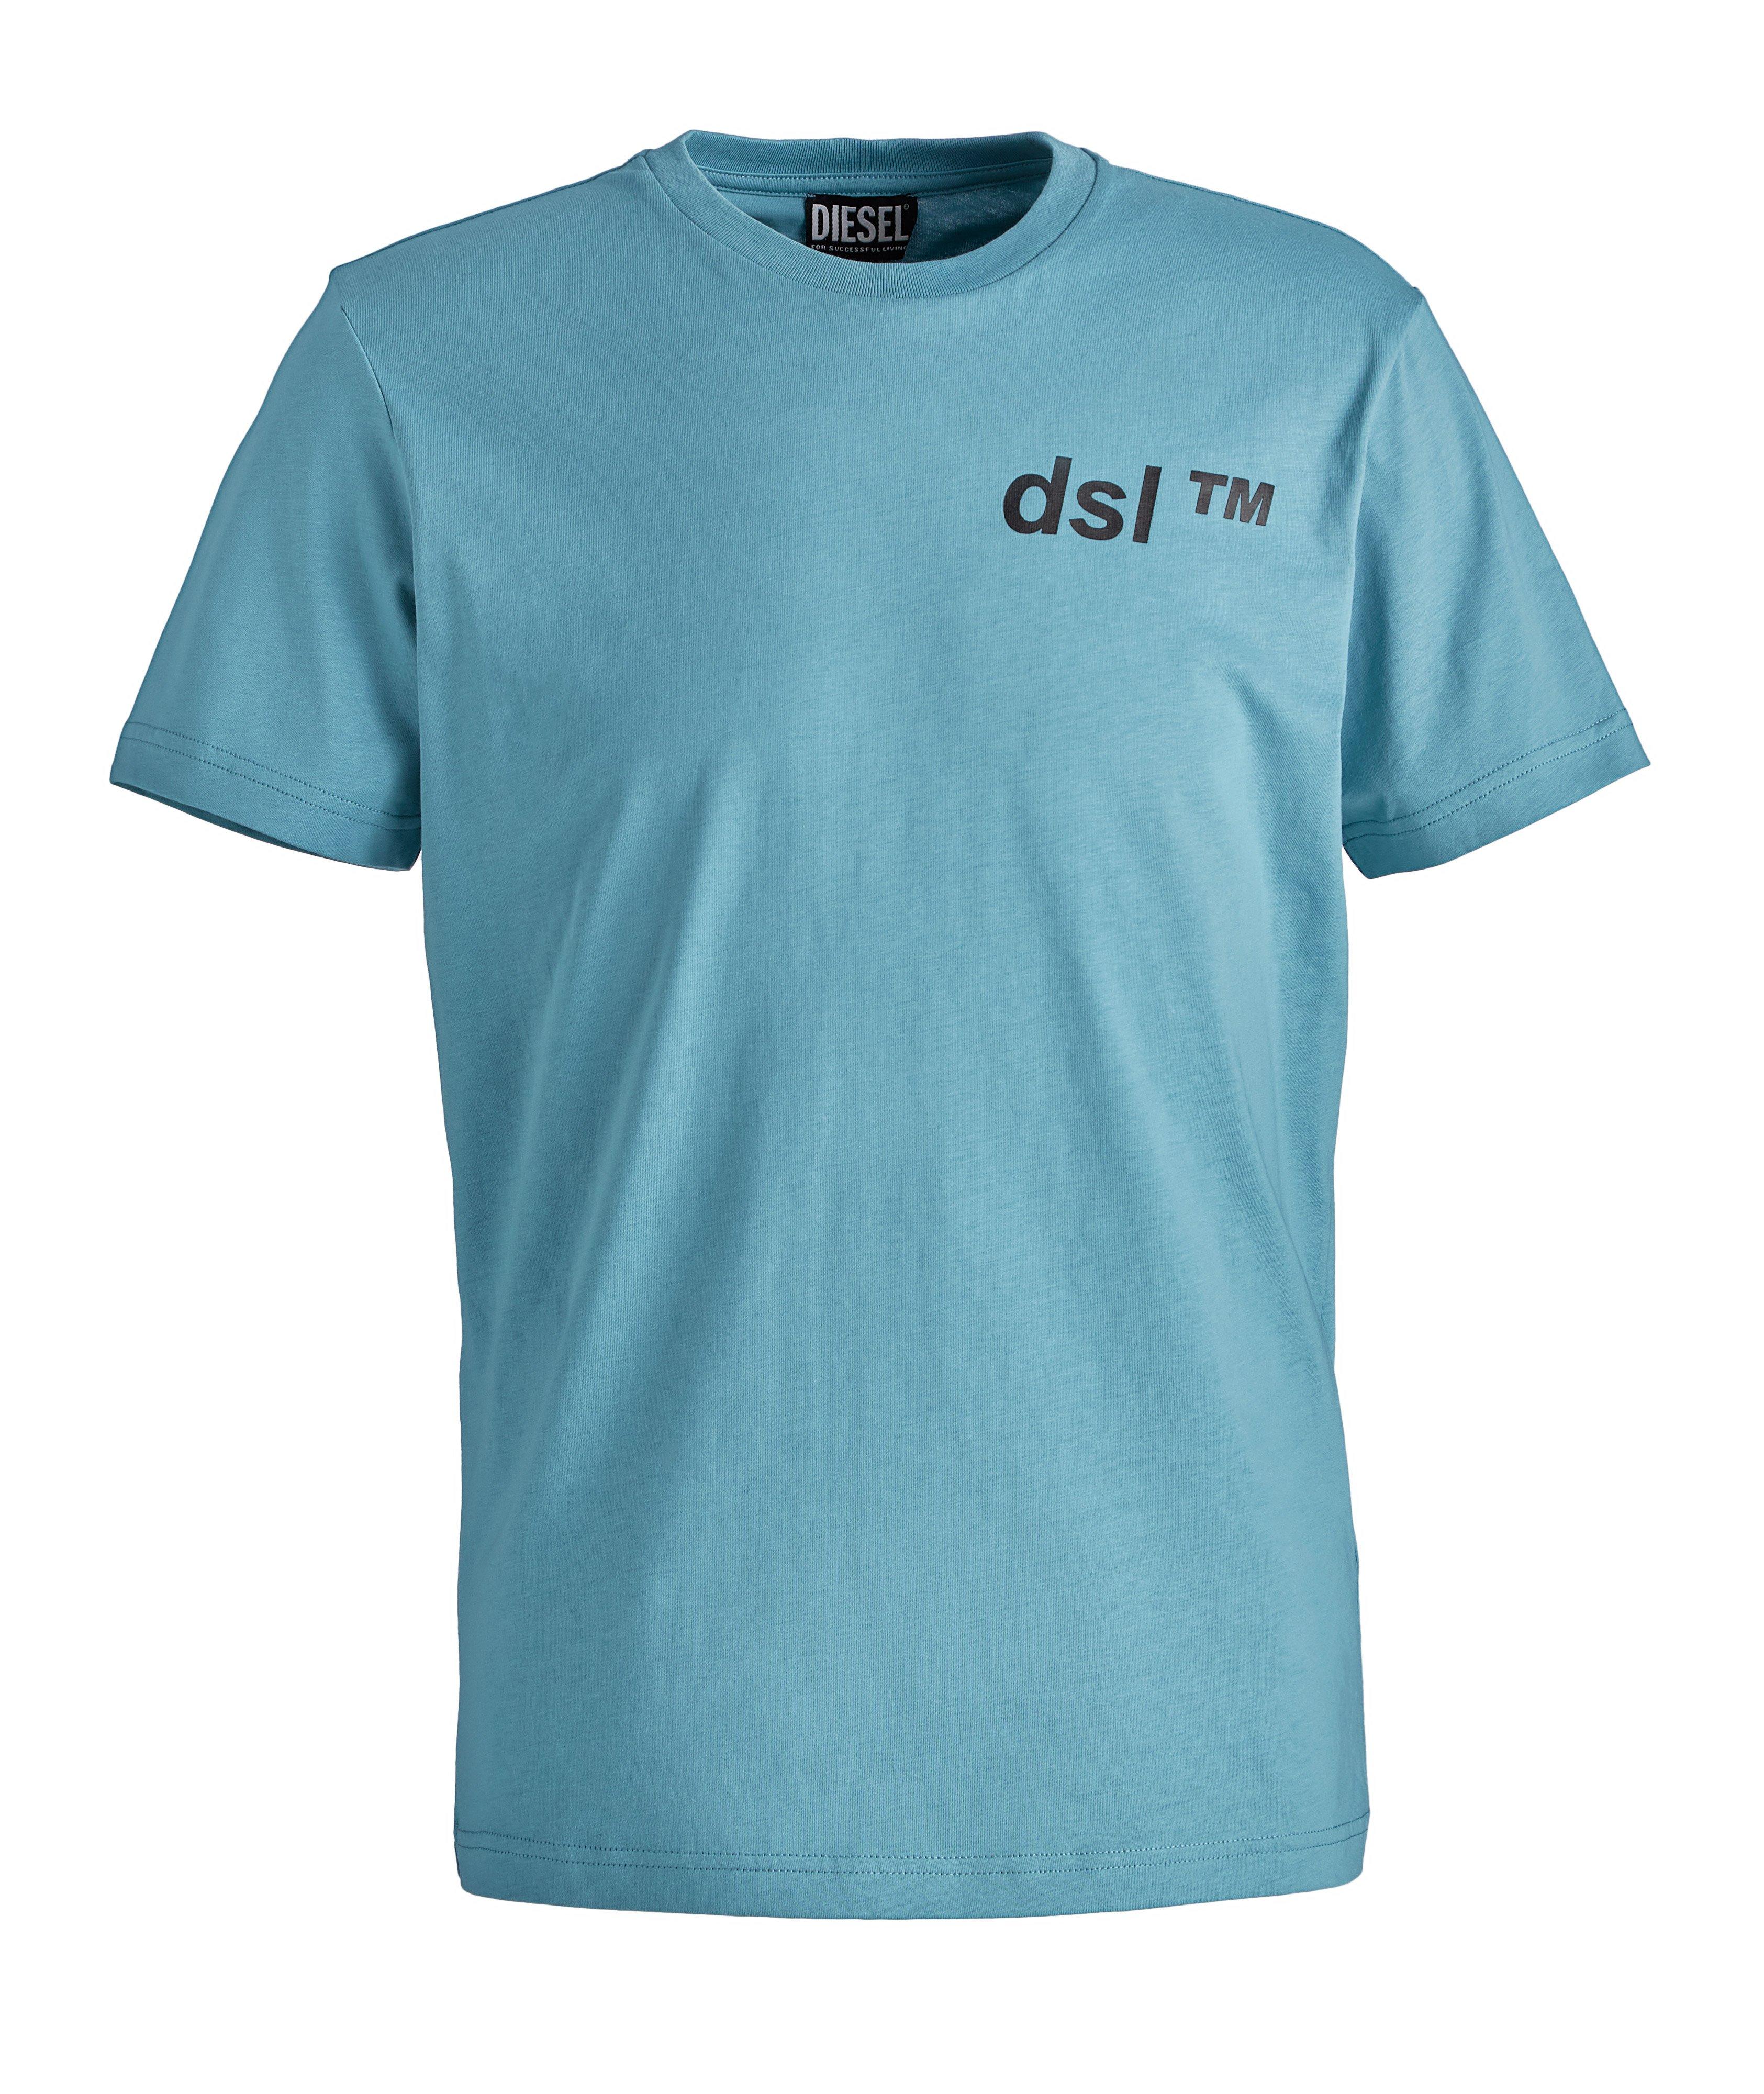 dsl Print Cotton T-Shirt image 0